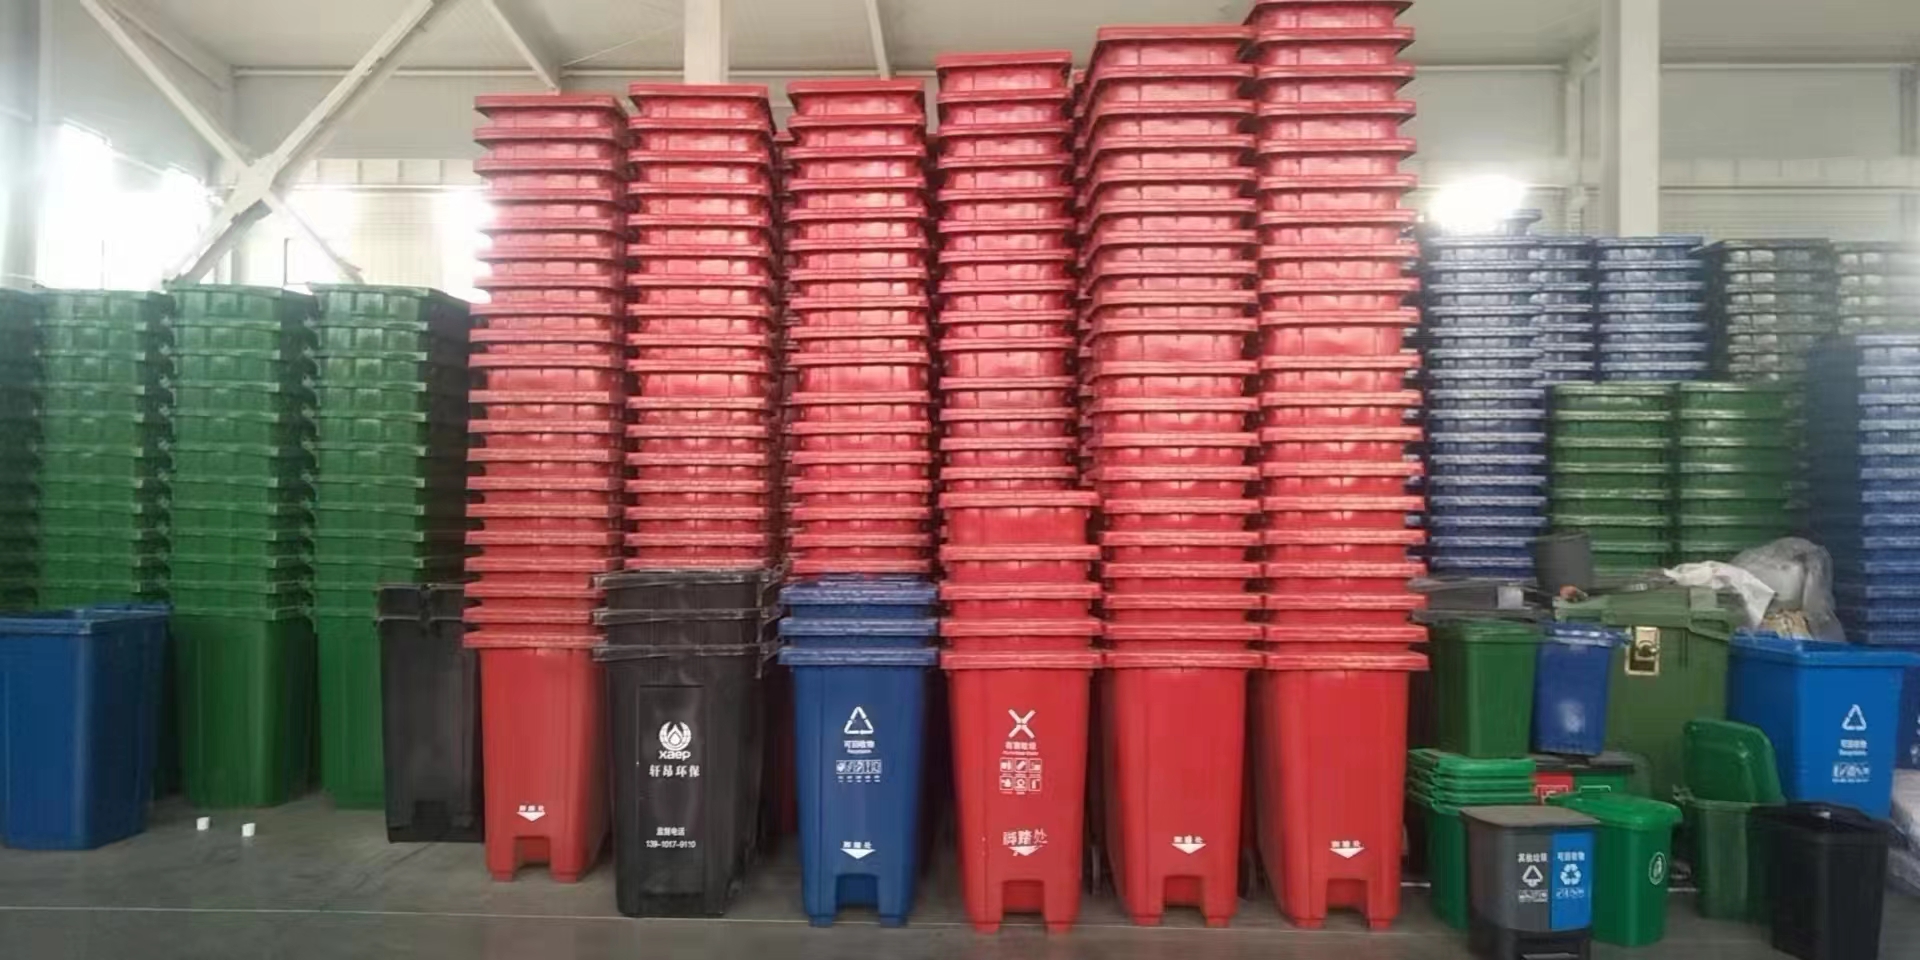 北京环卫垃圾桶可配套垃圾车垃圾桶  塑料垃圾桶